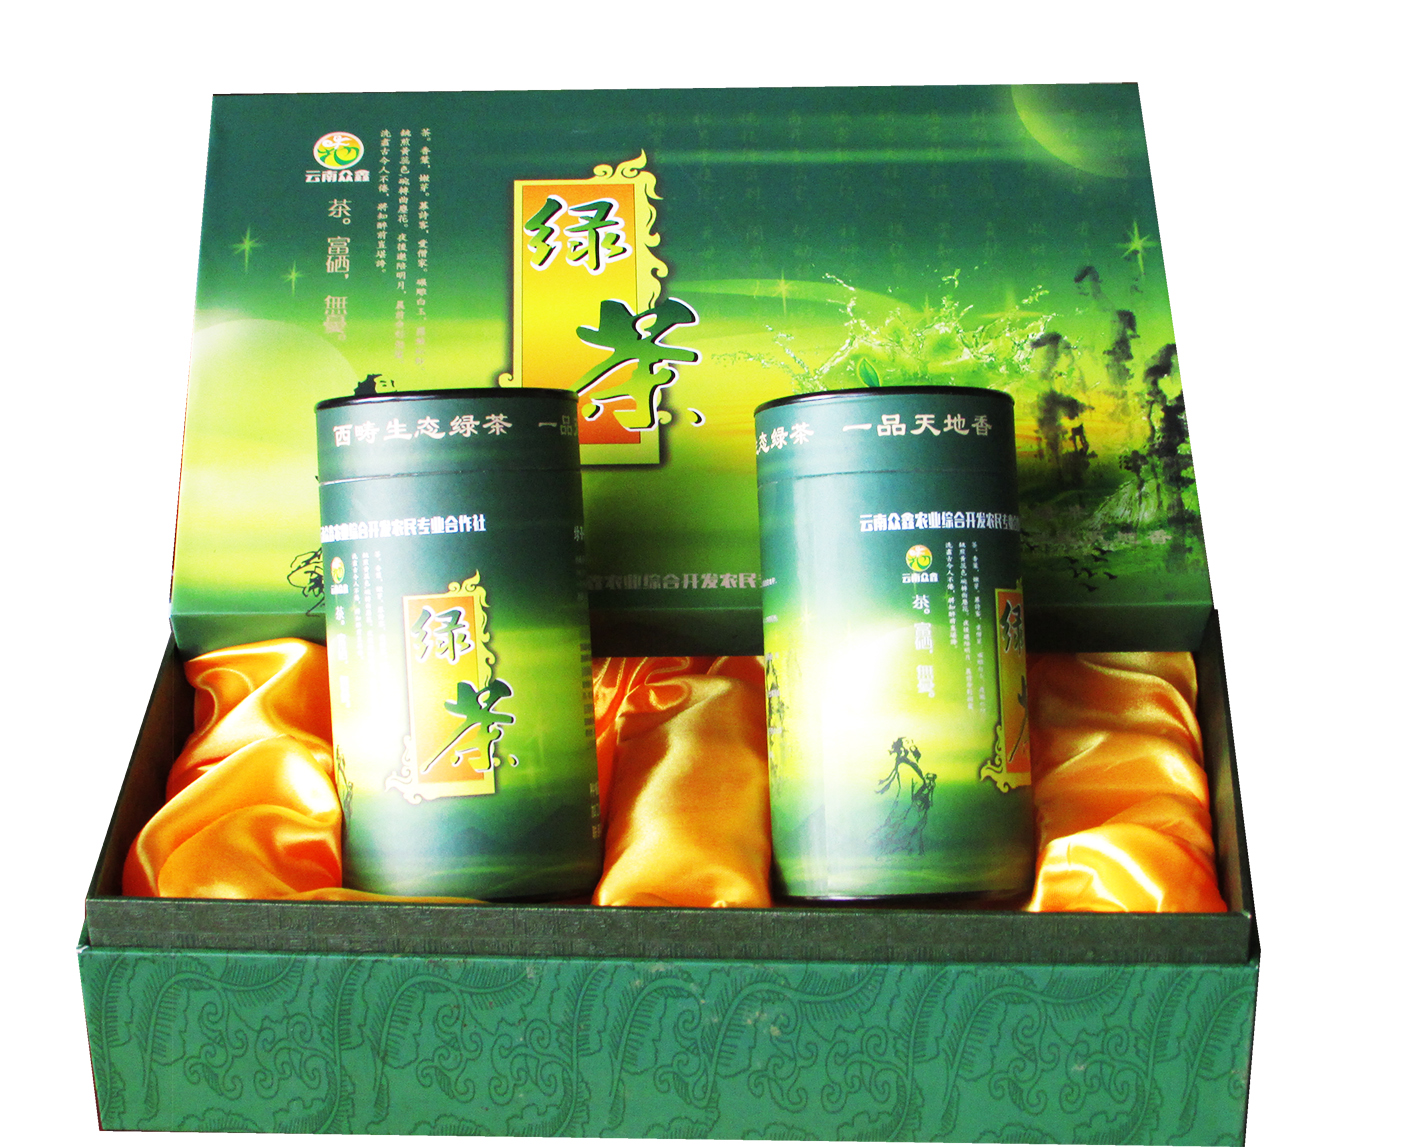 昆明速邇彩印包裝農產品包裝盒茶葉盒等禮品盒制作廠家